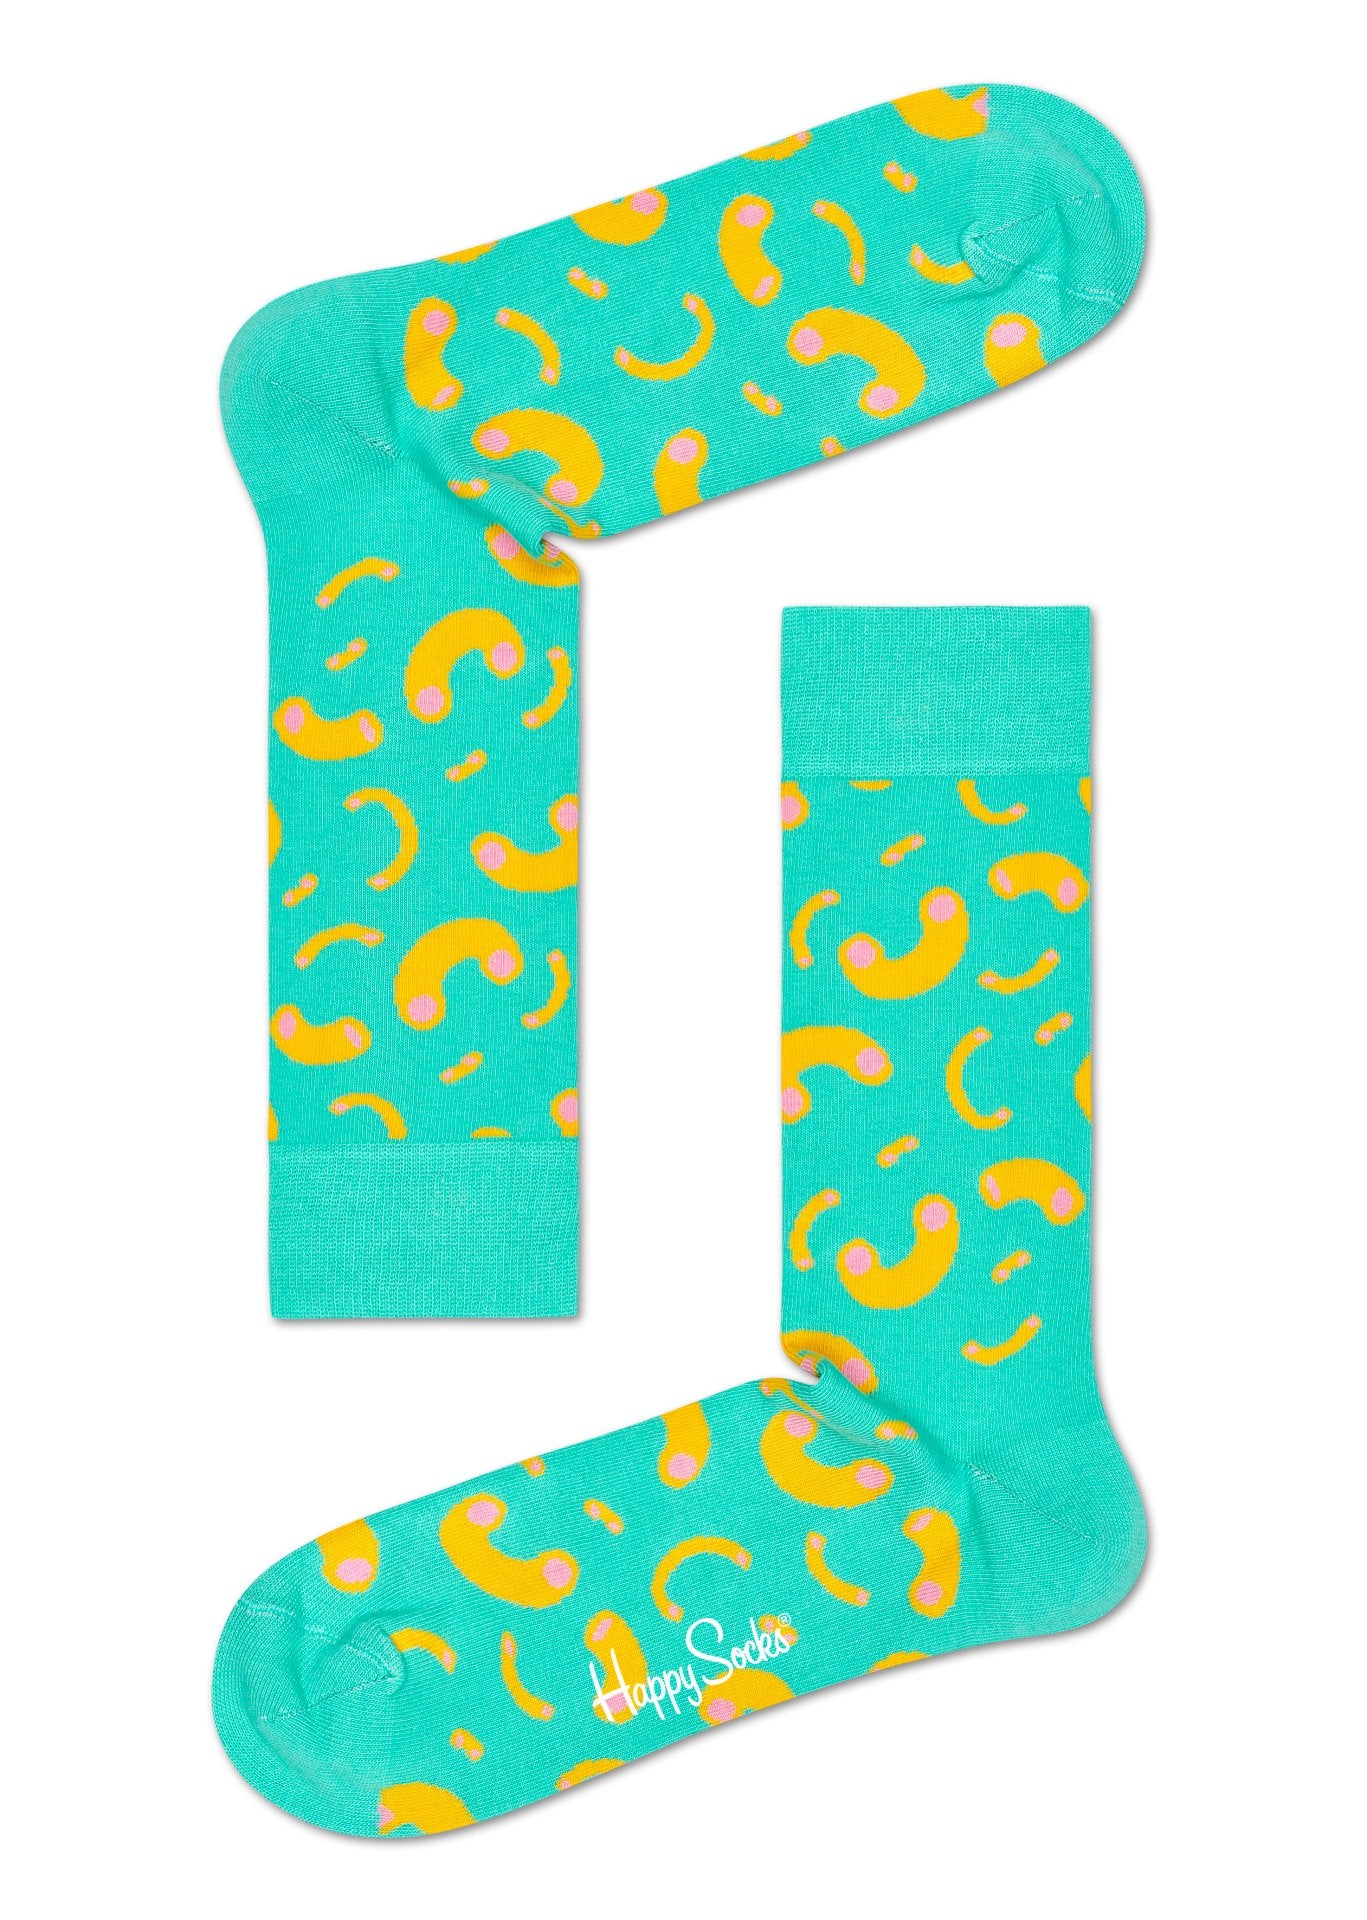 Tyrkysové ponožky Happy Socks s makarony, vzor Macaroni